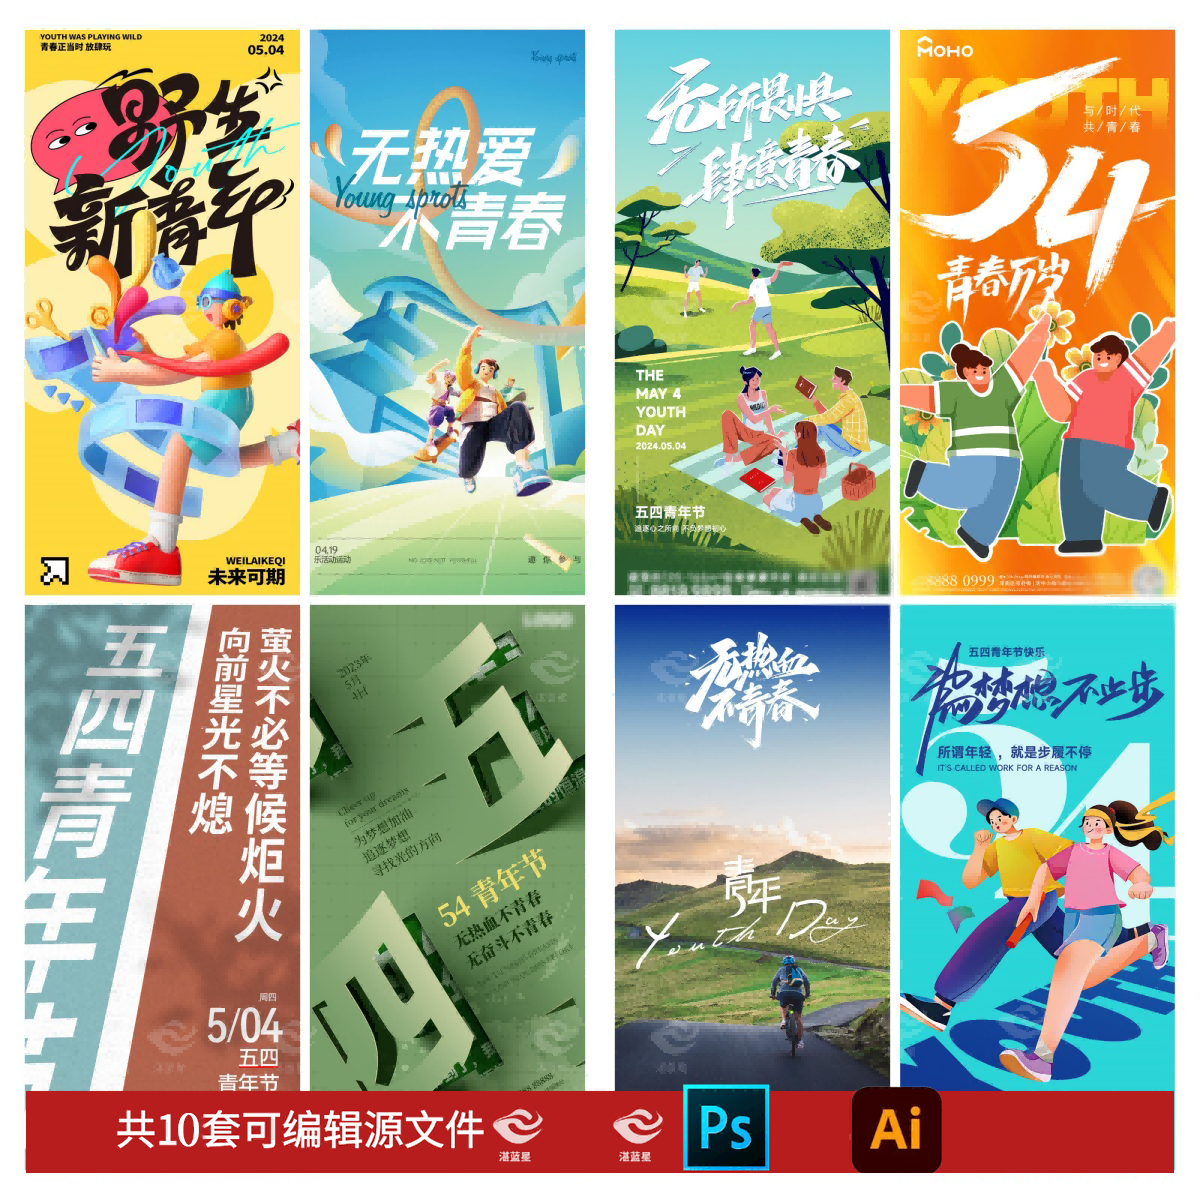 D23五四54青年节青春奋斗梦想宣传海报展板模板PSD/AI设计素材